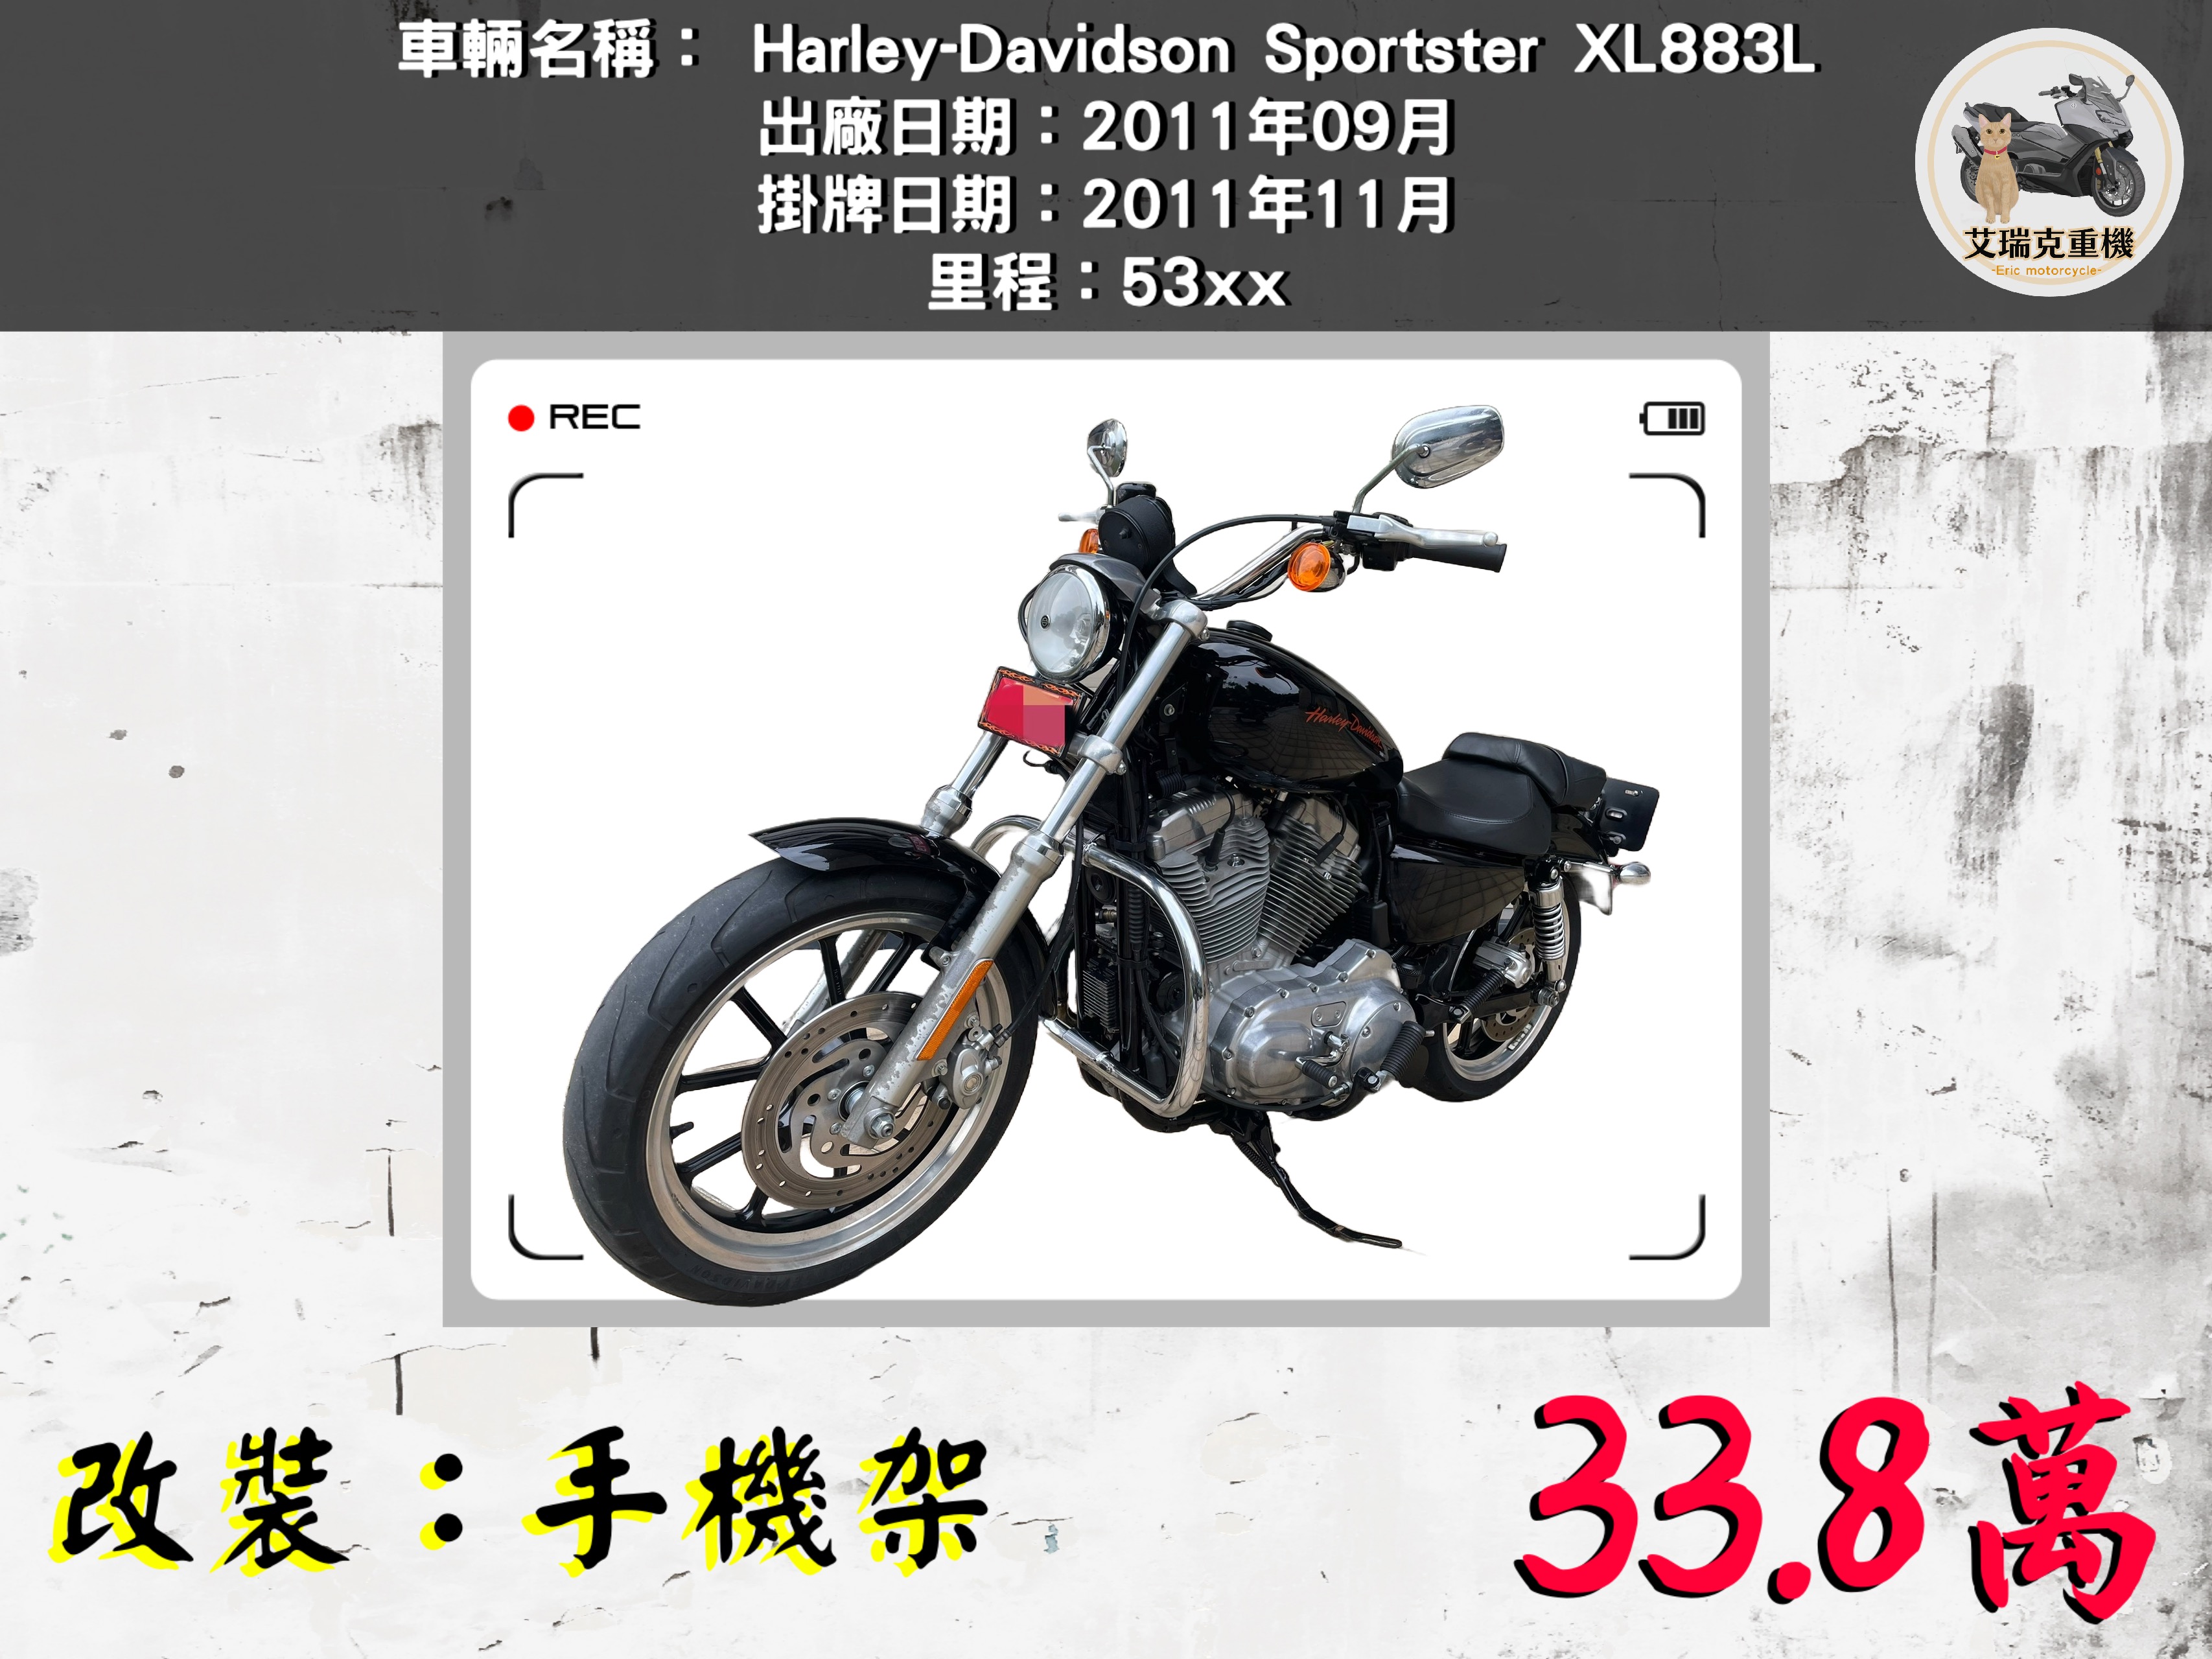 【艾瑞克重機】HARLEY-DAVIDSON XL883L - 「Webike-摩托車市」 Harley-Davidson Sportster XL883L